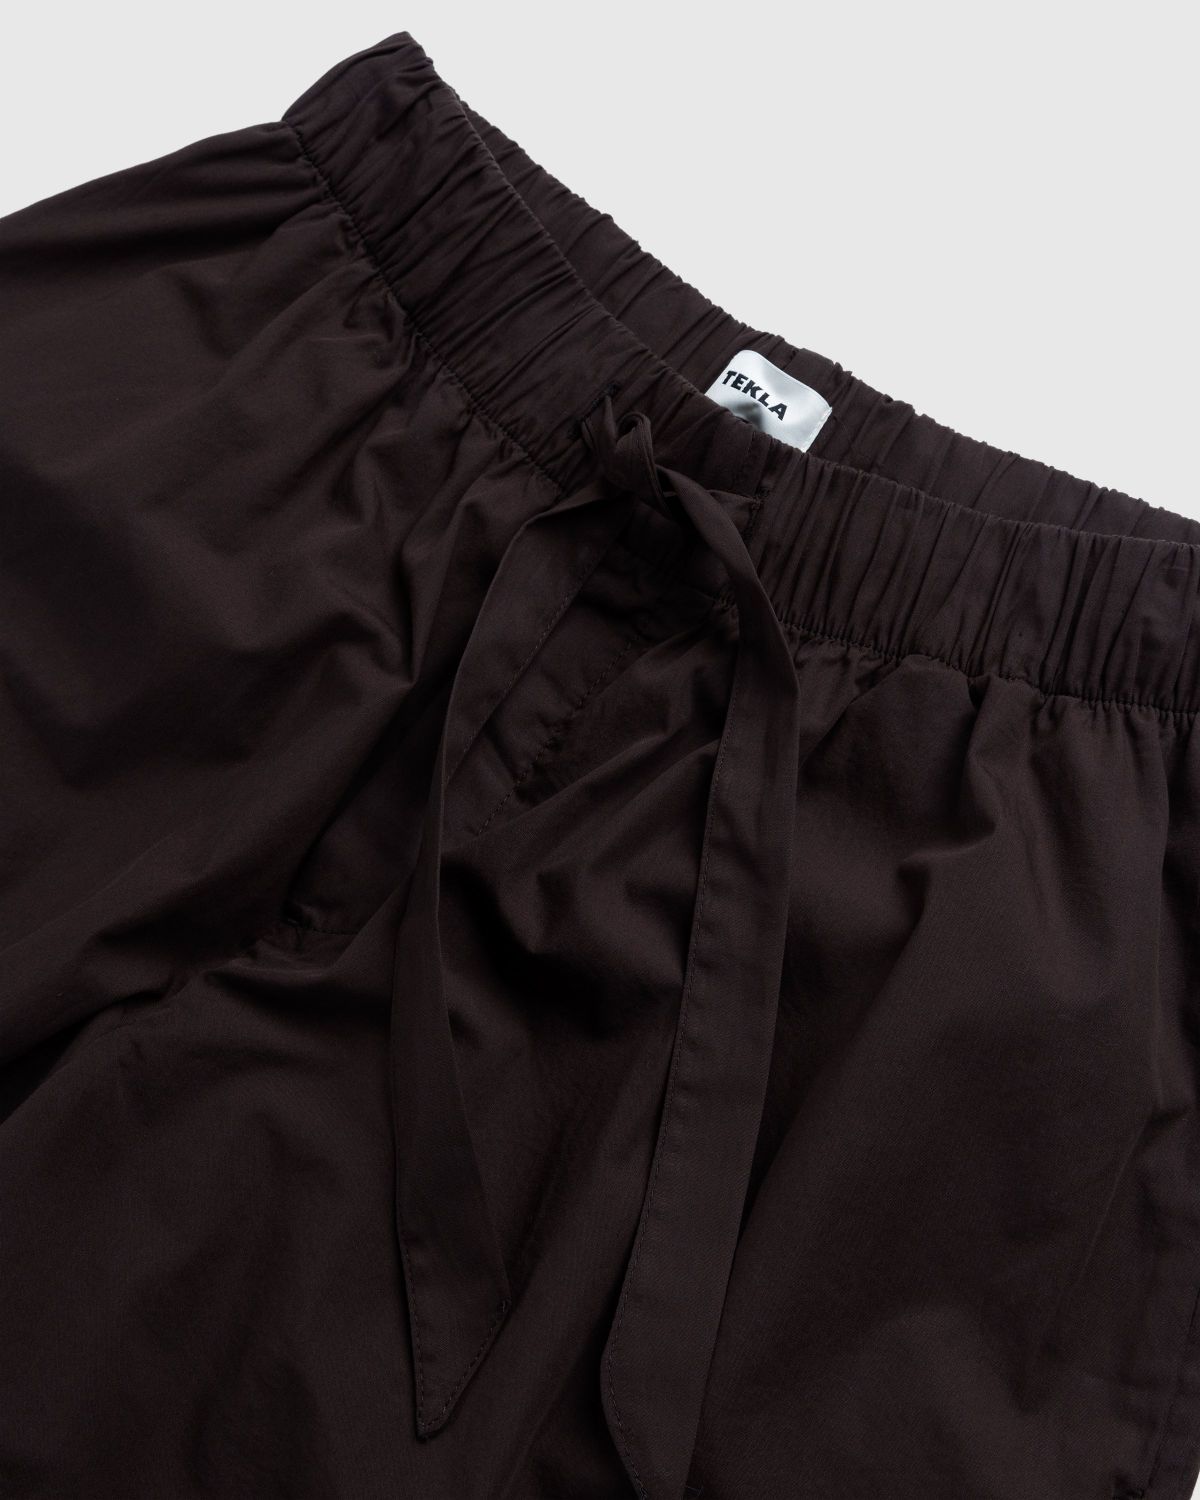 Tekla – Cotton Poplin Pyjamas Shorts Coffee - Pyjamas - Brown - Image 3